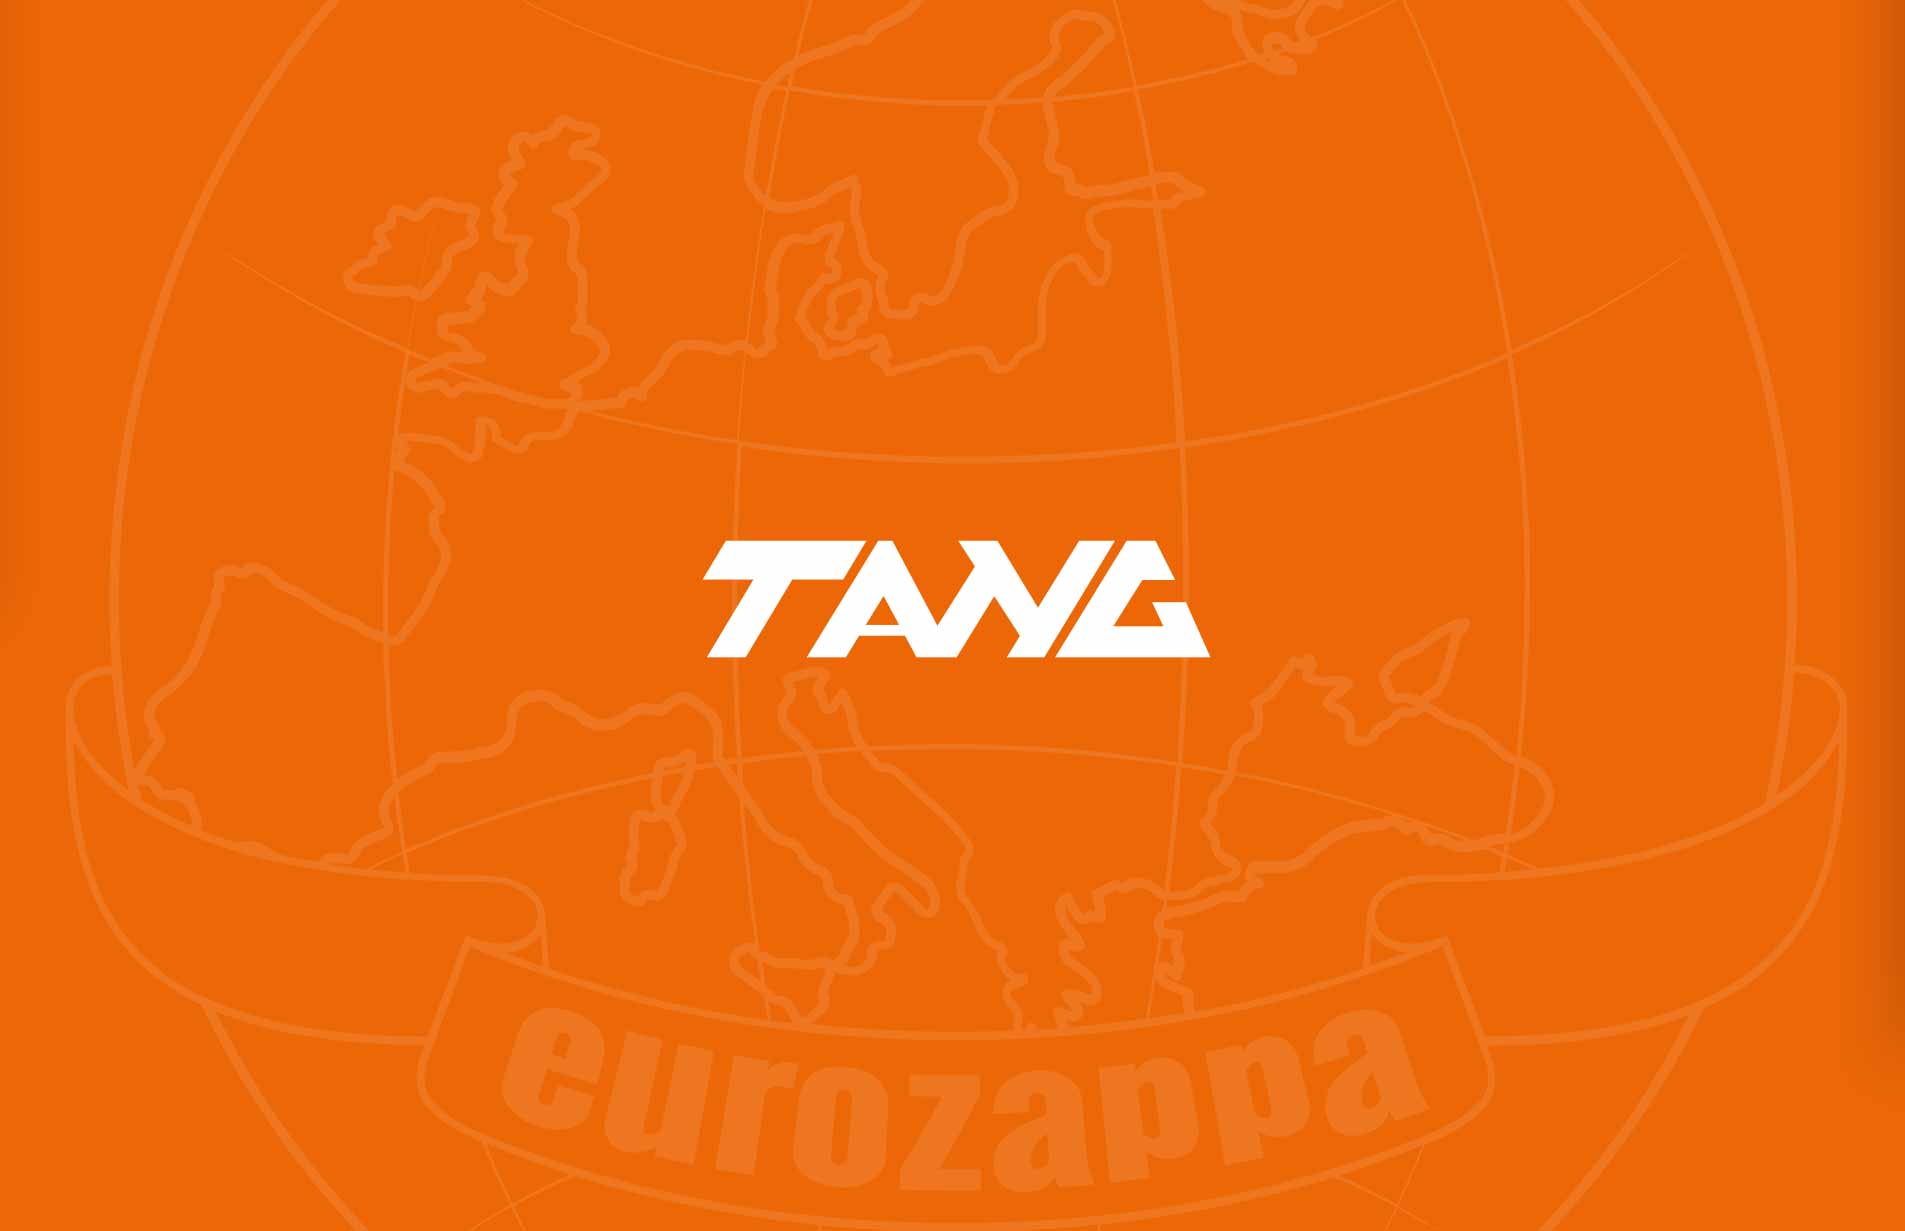 company logo restyling on orange background